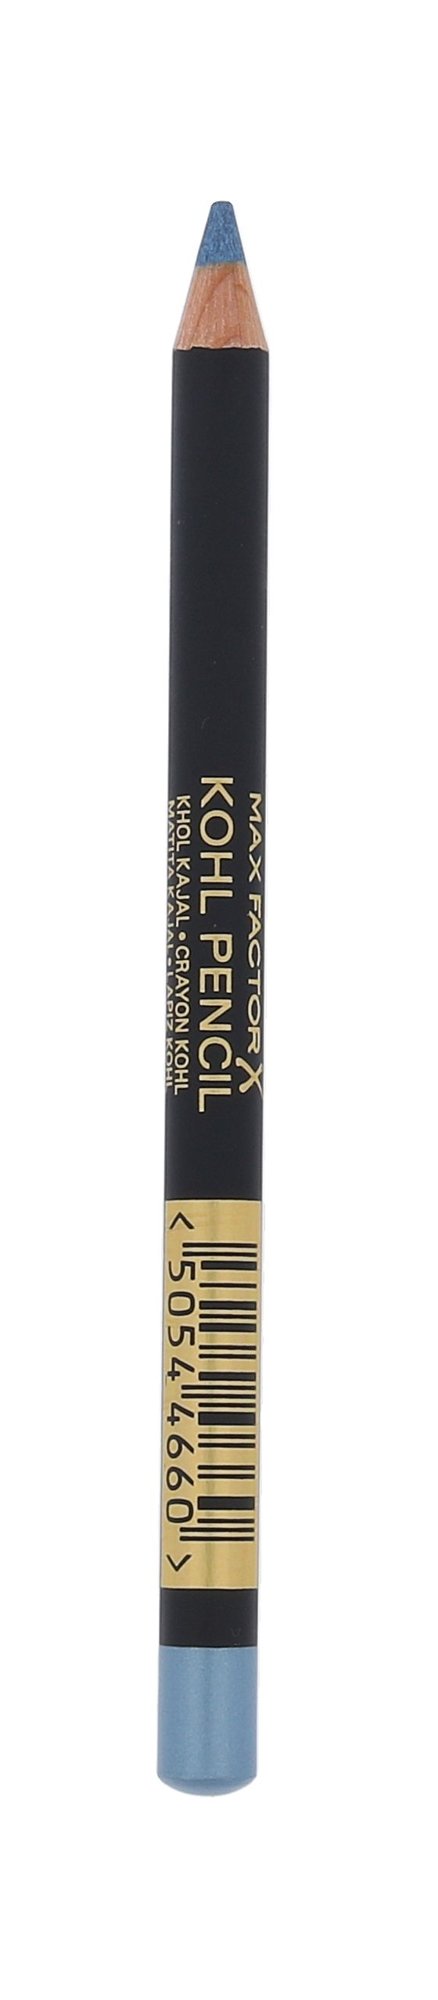 Max Factor Kohl Pencil 1,3g akių pieštukas